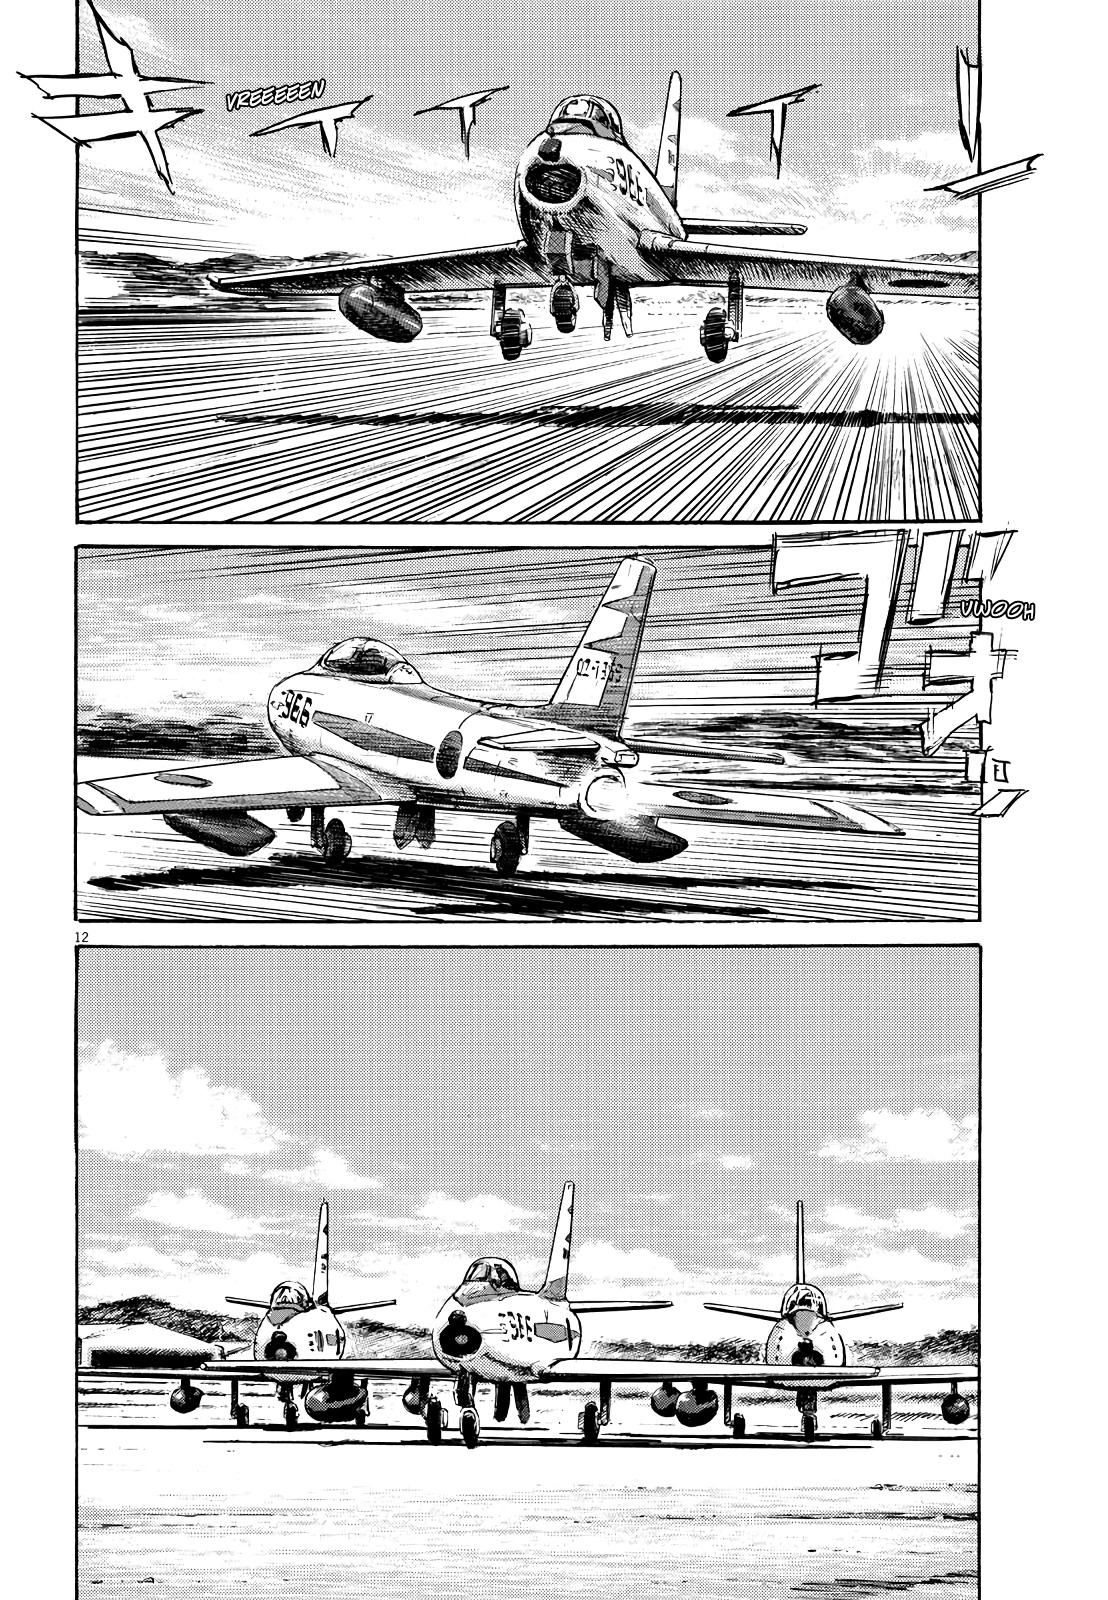 Renzoku Manga Shousetsu: Asadora! Capítulo 18 – Mangás Chan